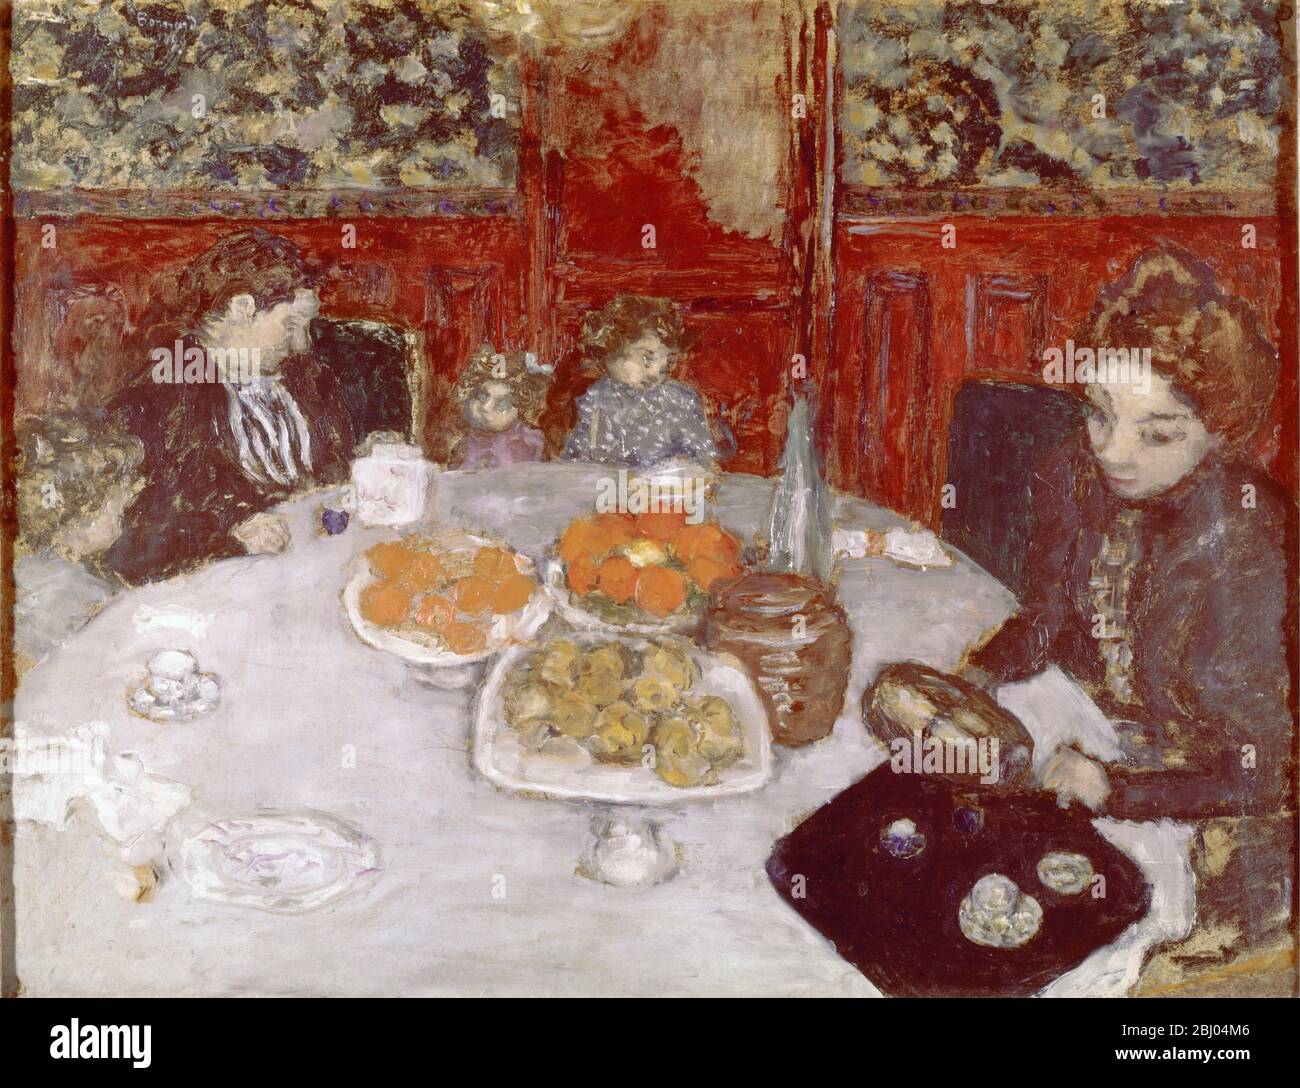 Le Dejeuner - 1899 - das Mittagessen - von Pierre Bonnard - in der Sammlung Buhrle, Zürich, Schweiz - Pierre Bonnard (3. Oktober 1867 - 23. Januar 1947) war ein französischer Maler und Grafiker. - Stockfoto